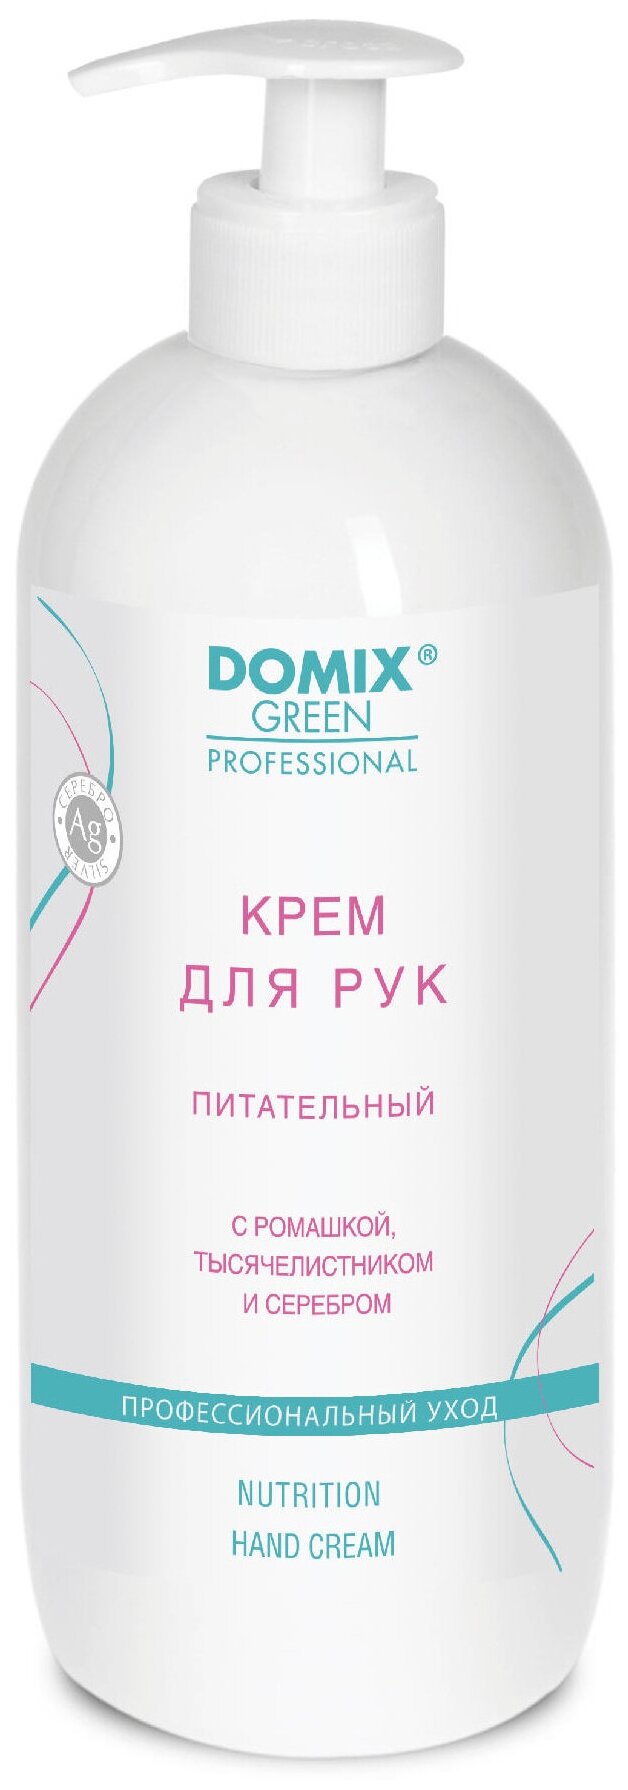 Domix Green Professional Крем для рук DOMIX питательный с ромашкой тысячелистником и коллоидным серебром 250 мл